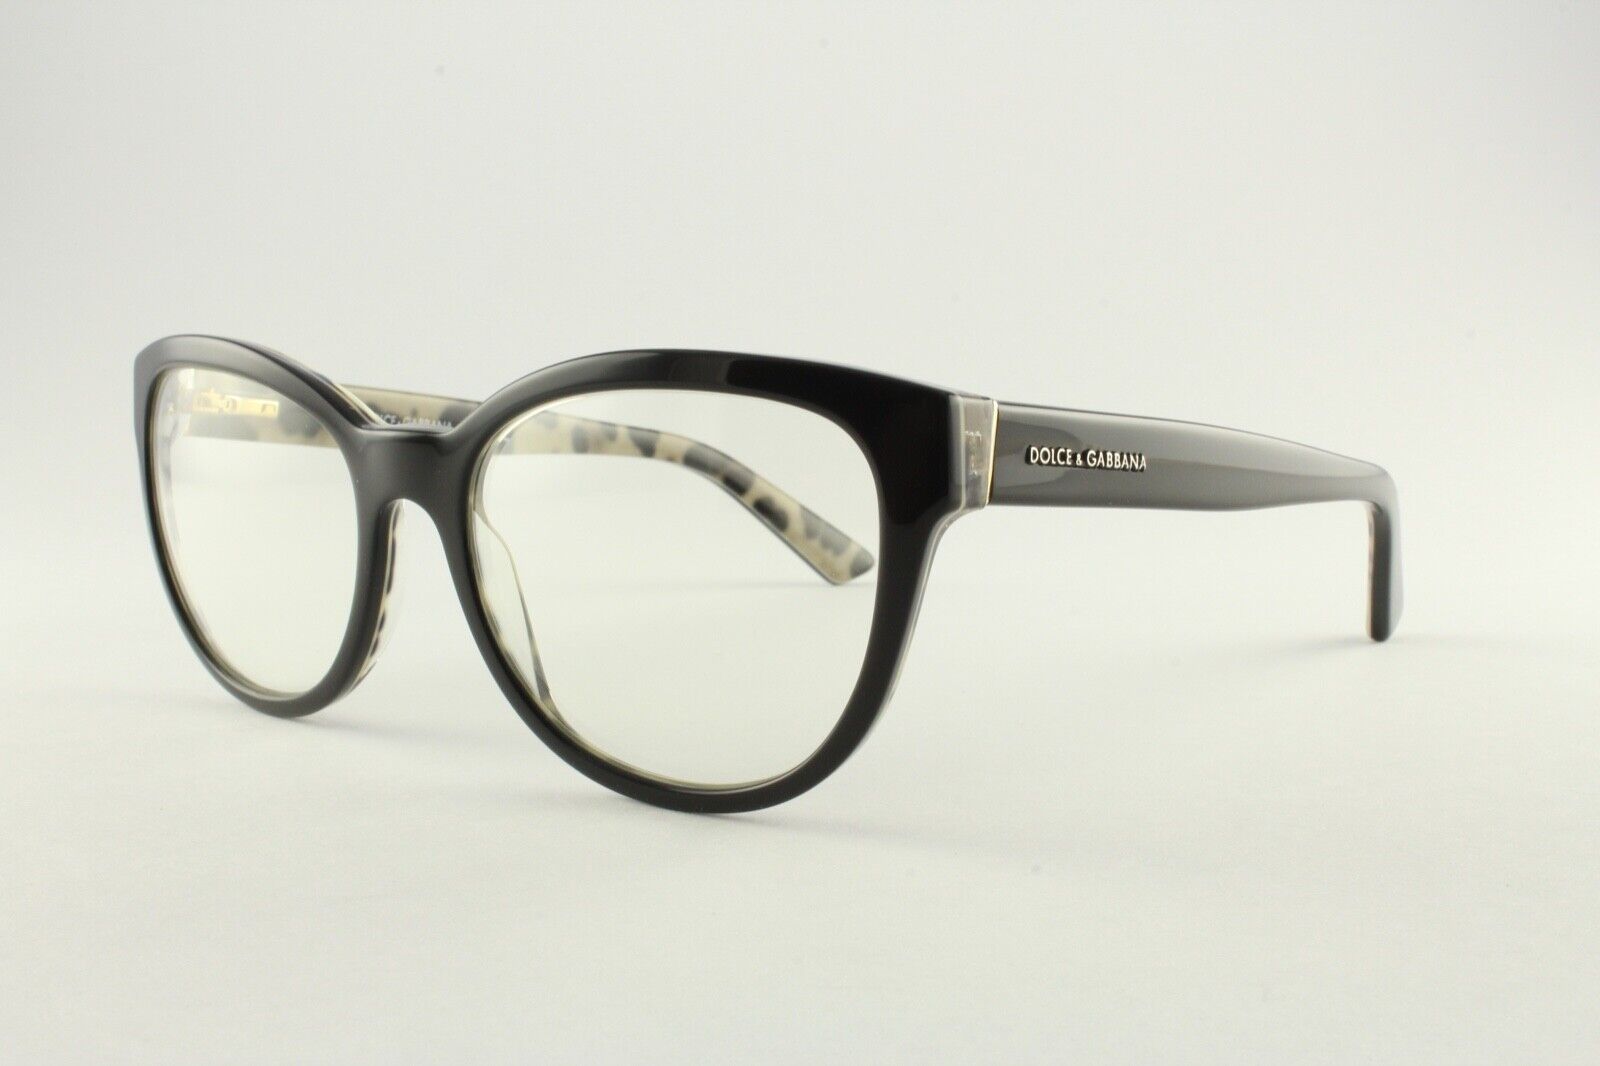 Authentic Dolce & Gabbana DG 3209 2857 Black Leopard 53mm Frames Glasses  RX-able